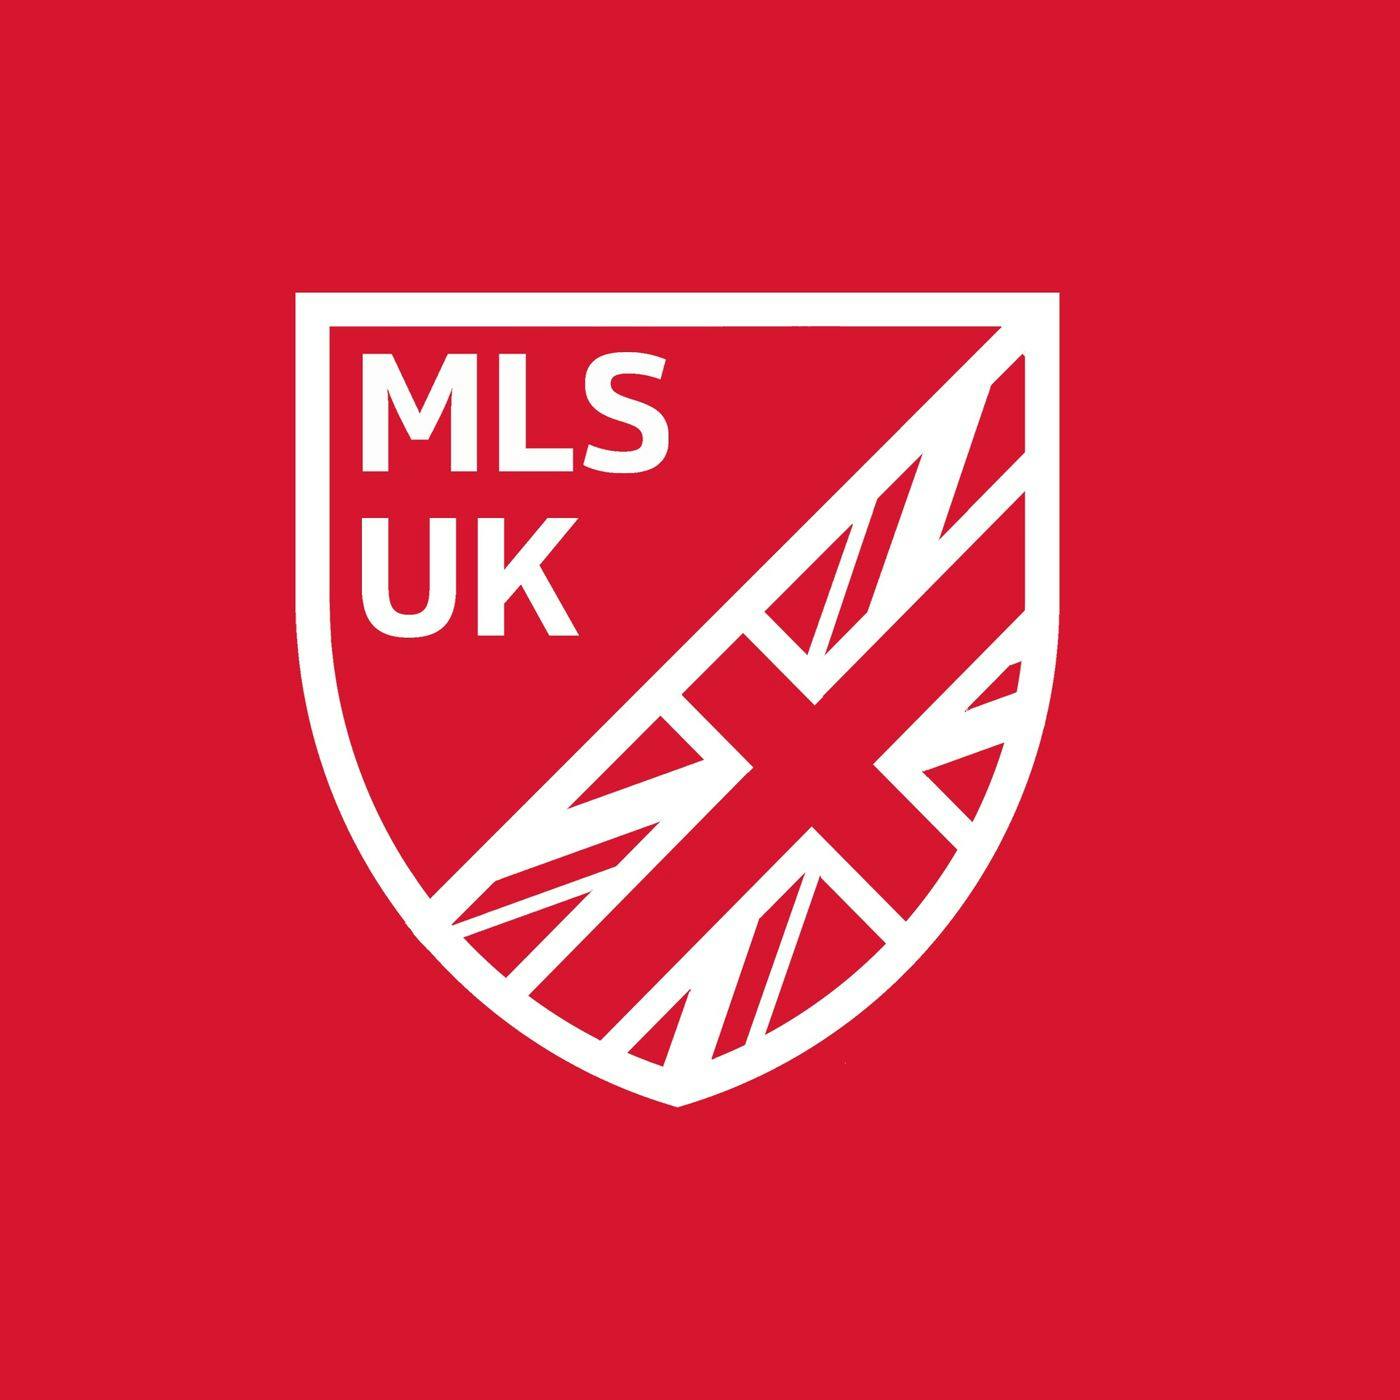 MLS UK Show:MLS UK Show